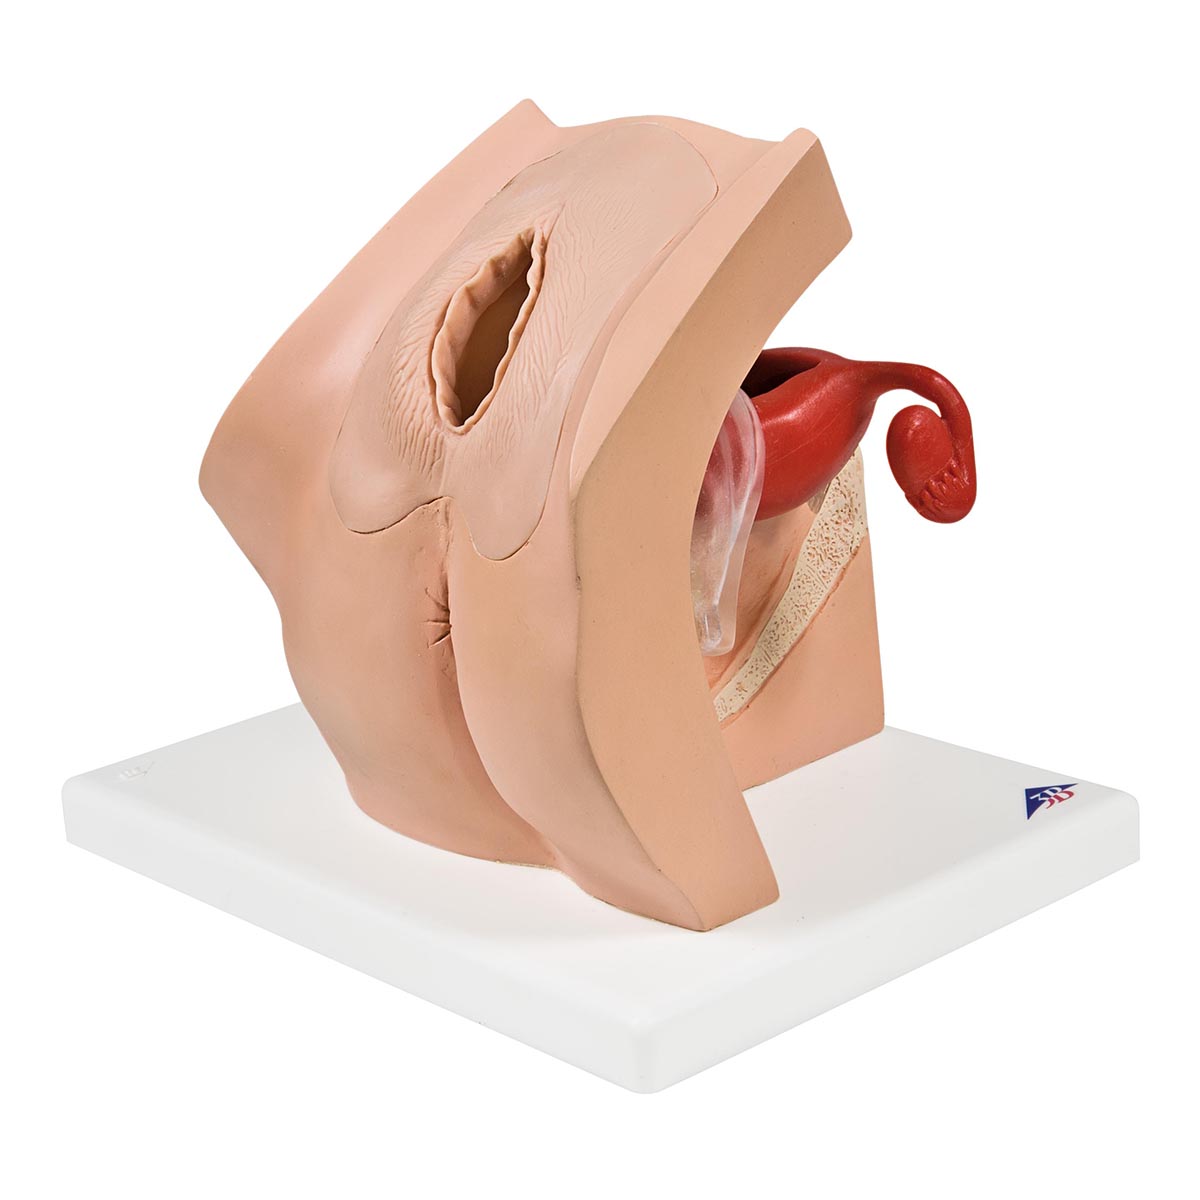 Обучающая гинекологическая модель для медицинского просвещения пациентов - 3B Smart Anatomy